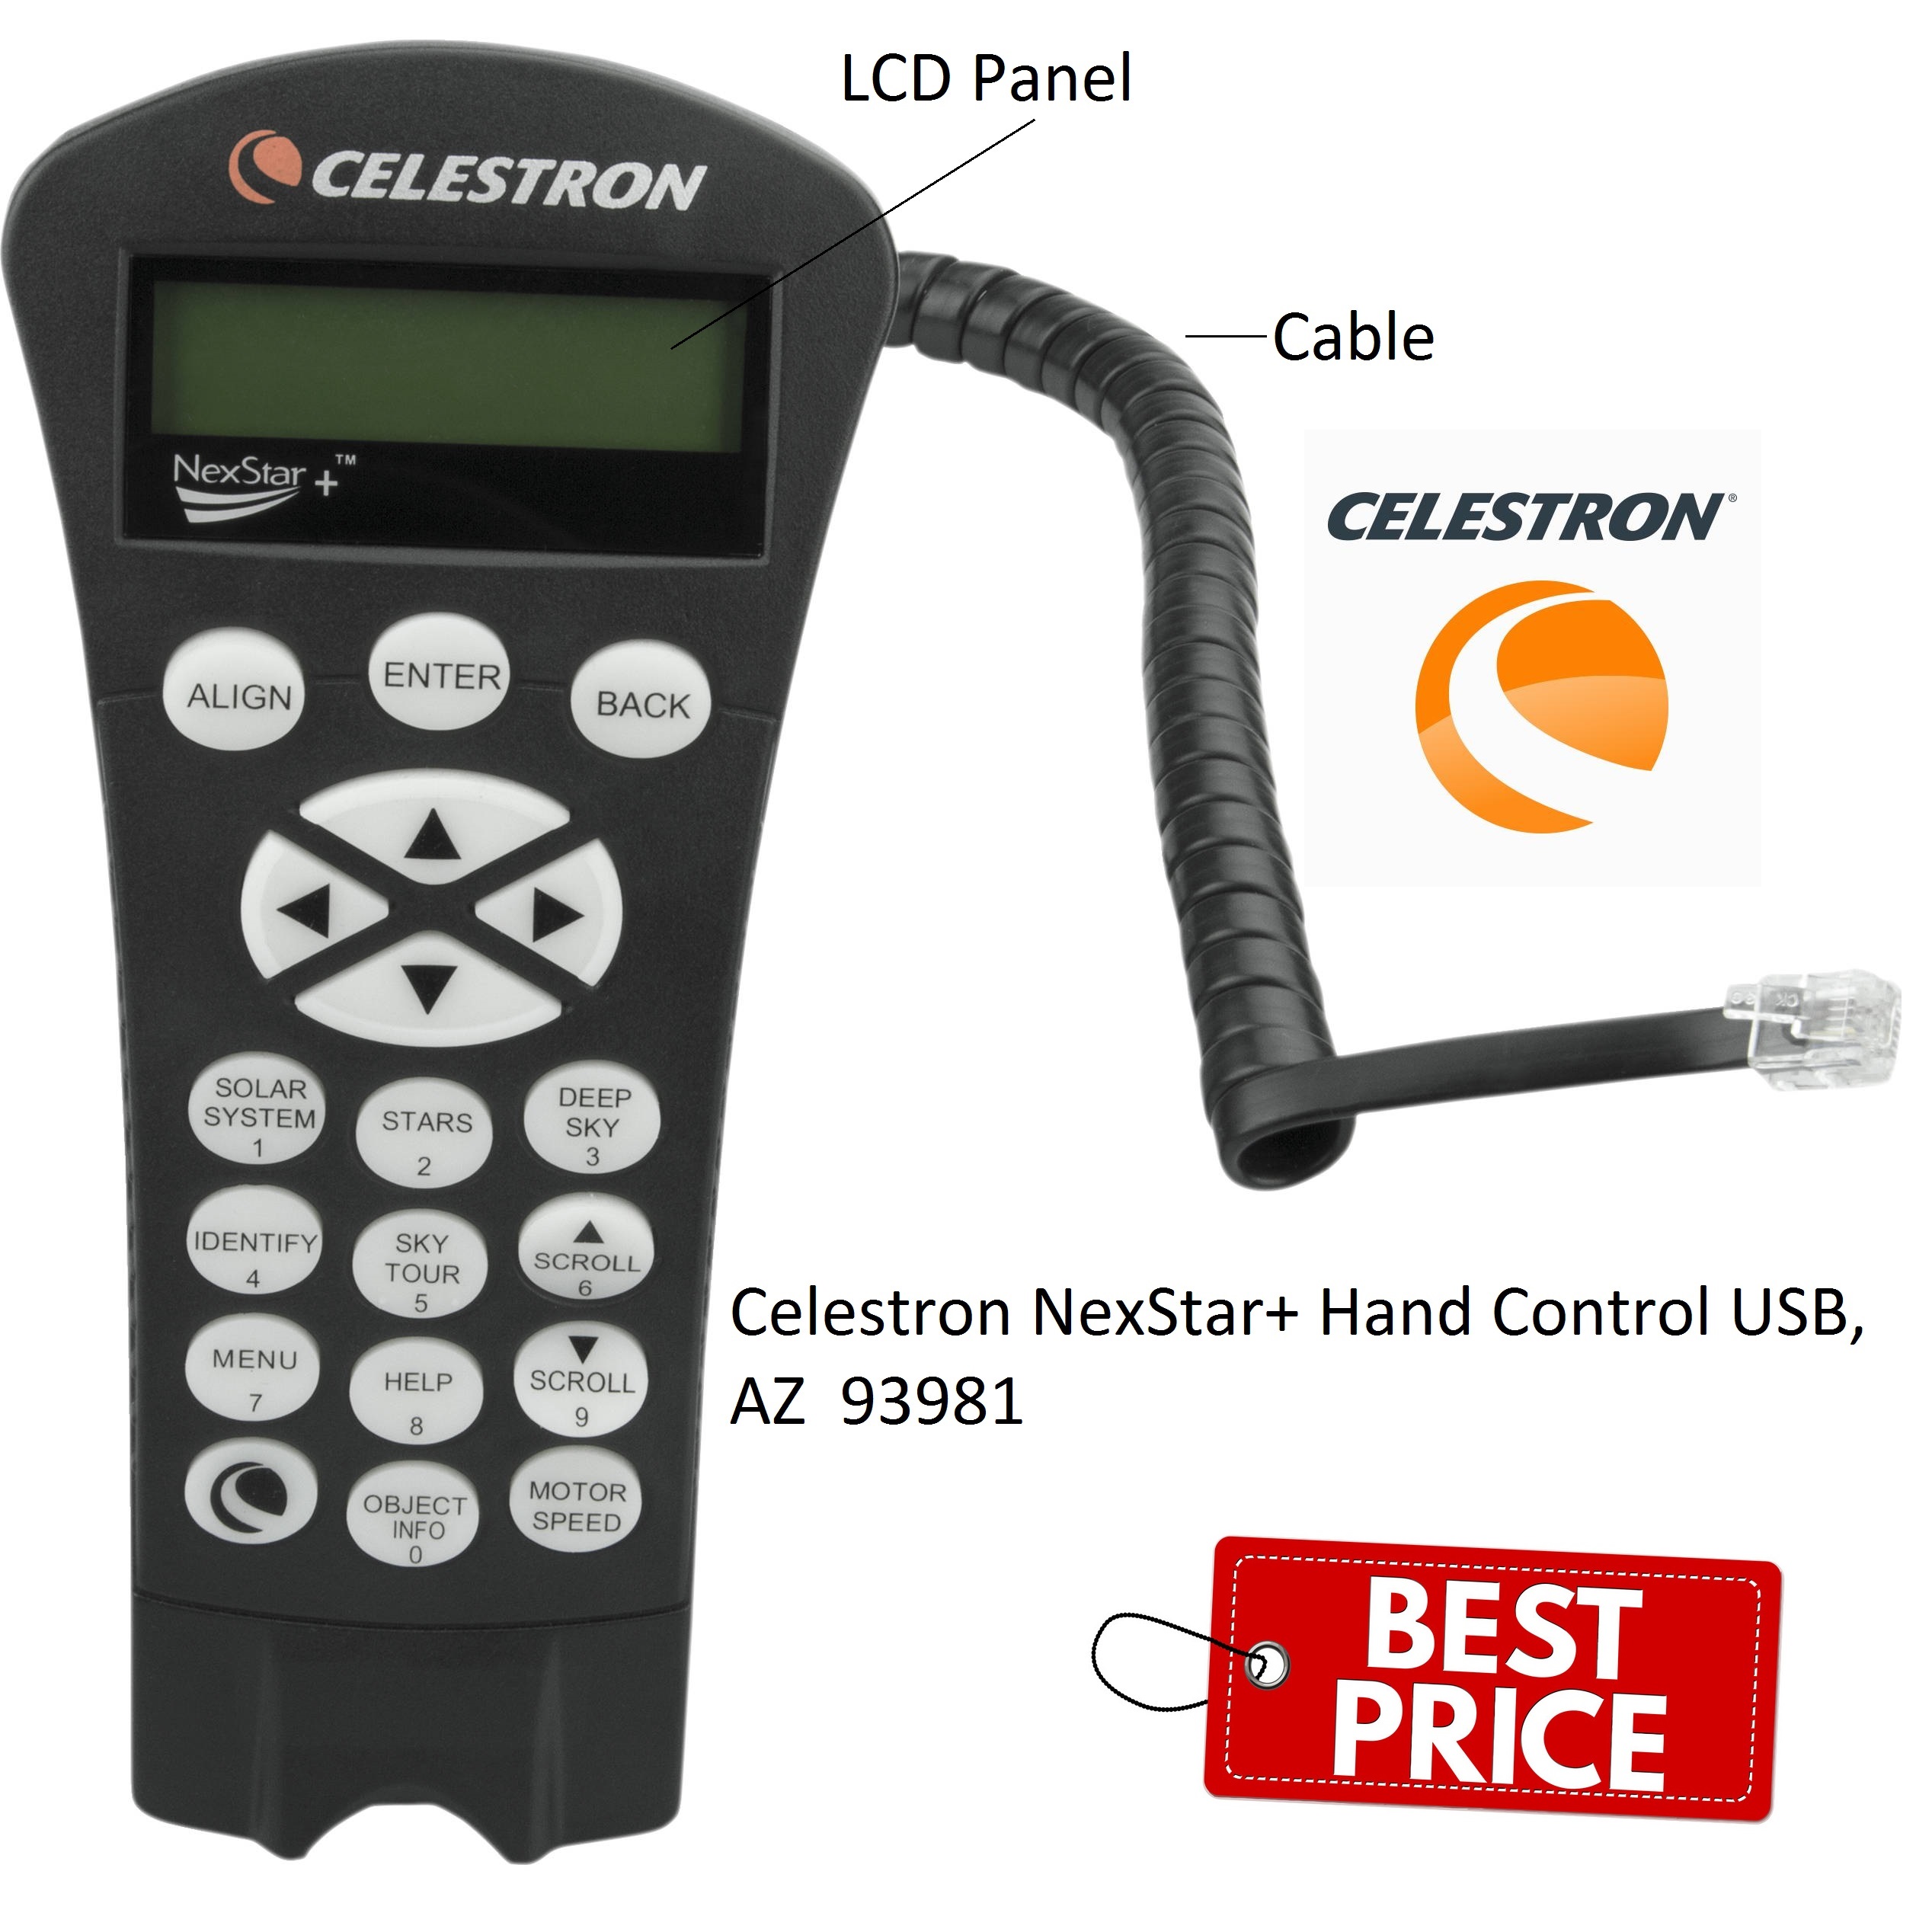 Celestron NexStar+ Hand Control USB, AZ